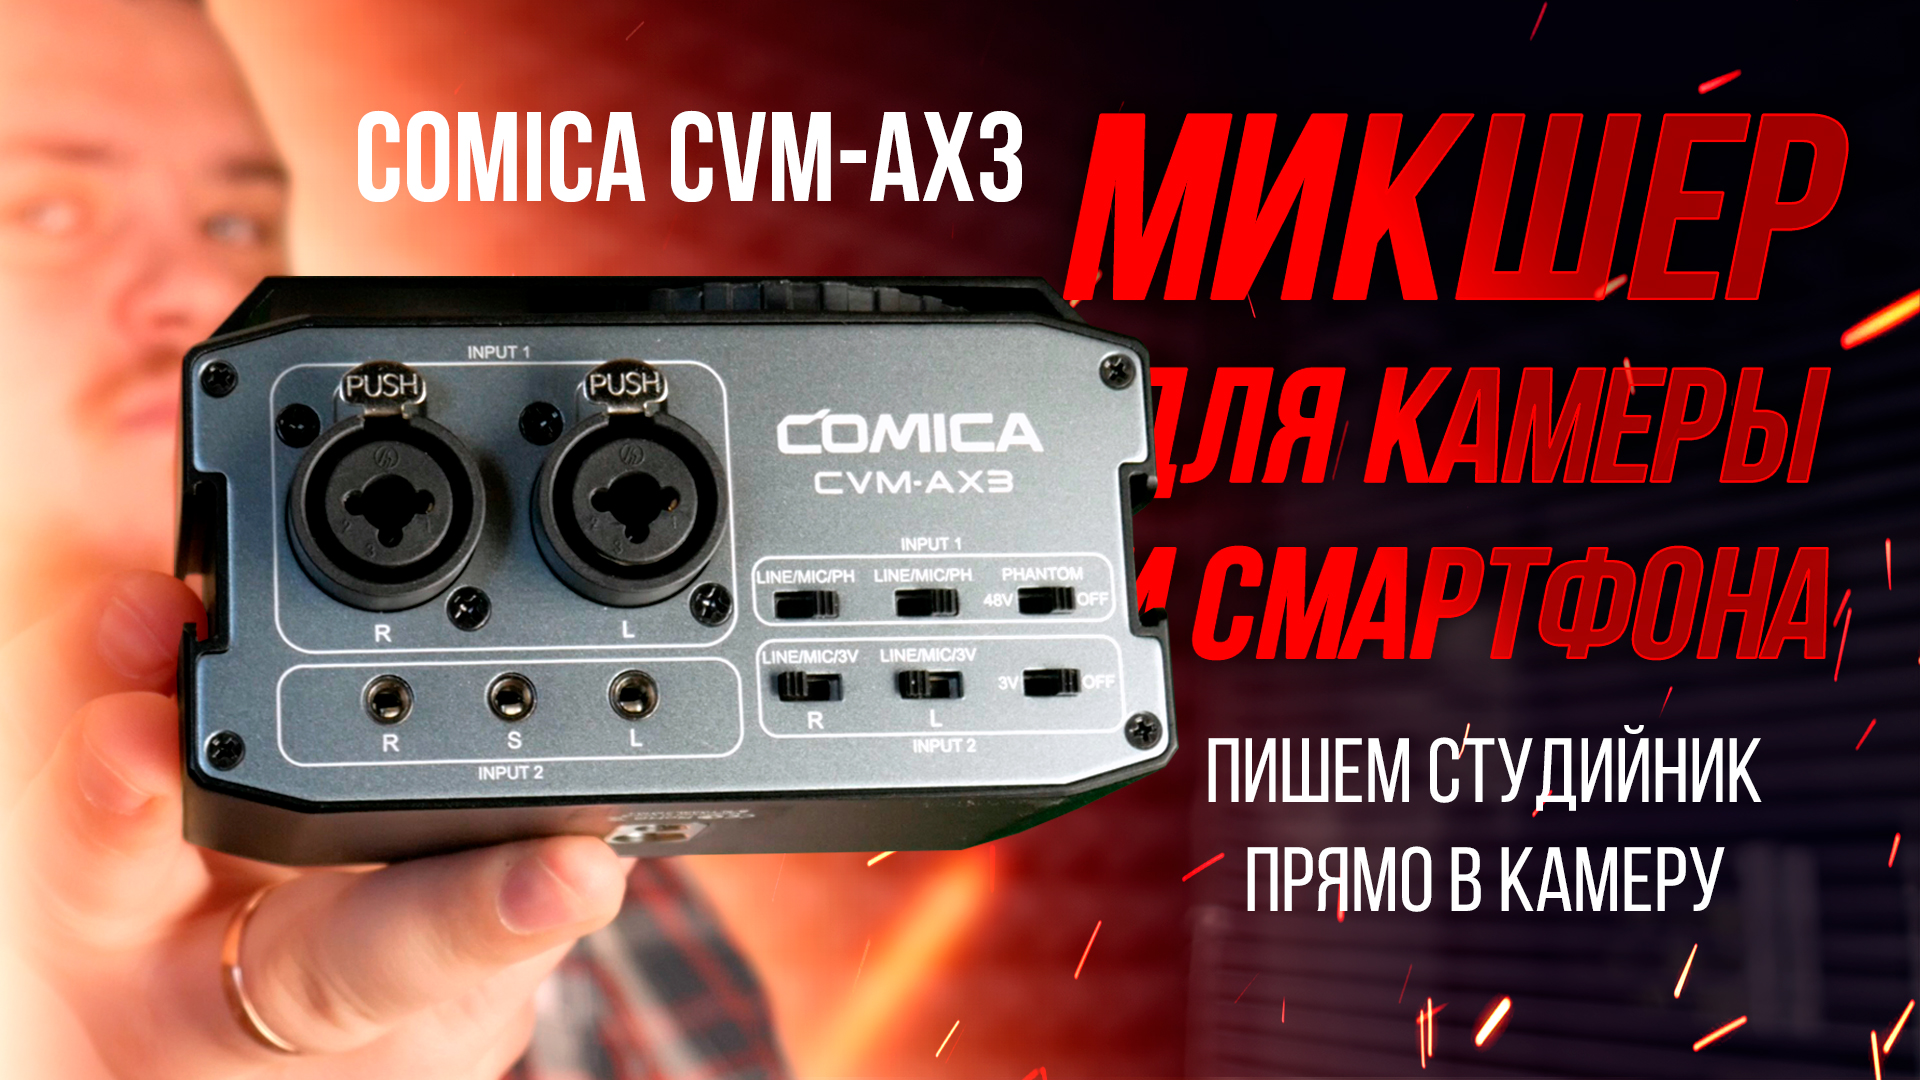 Пишем студийный микрофон напрямую в камеру или смартфон - обзор микшера для камеры COMICA CVM-AX3